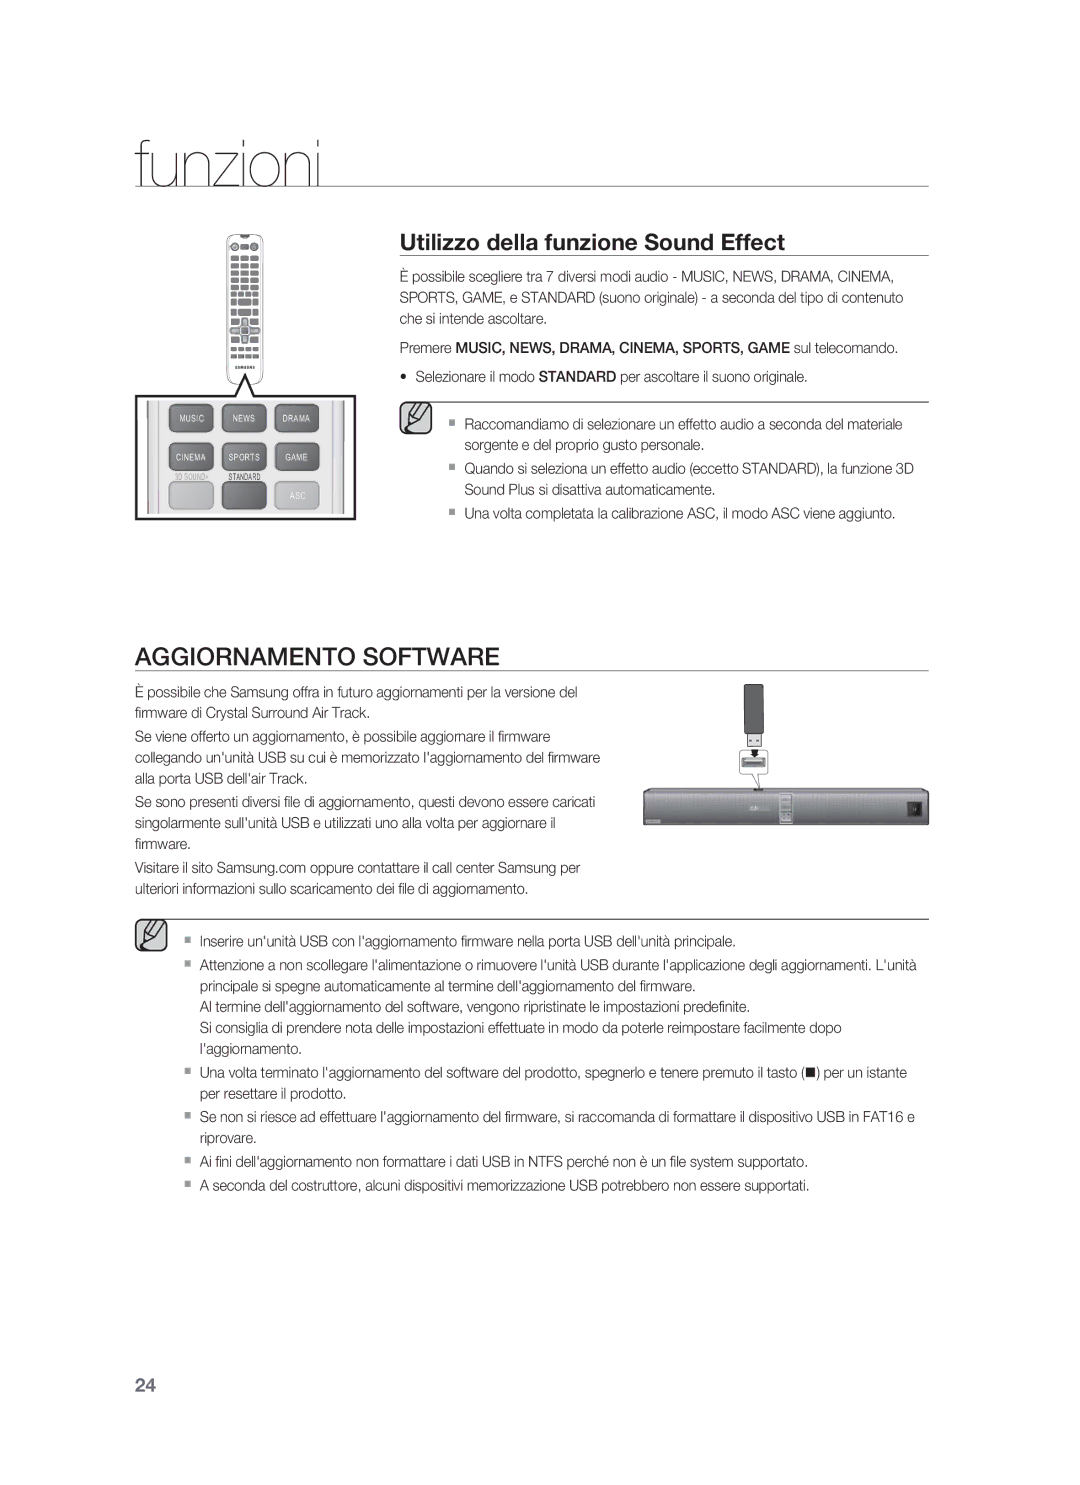 Samsung HW-F850/ZF manual Aggiornamento Software, Utilizzo della funzione Sound Effect 